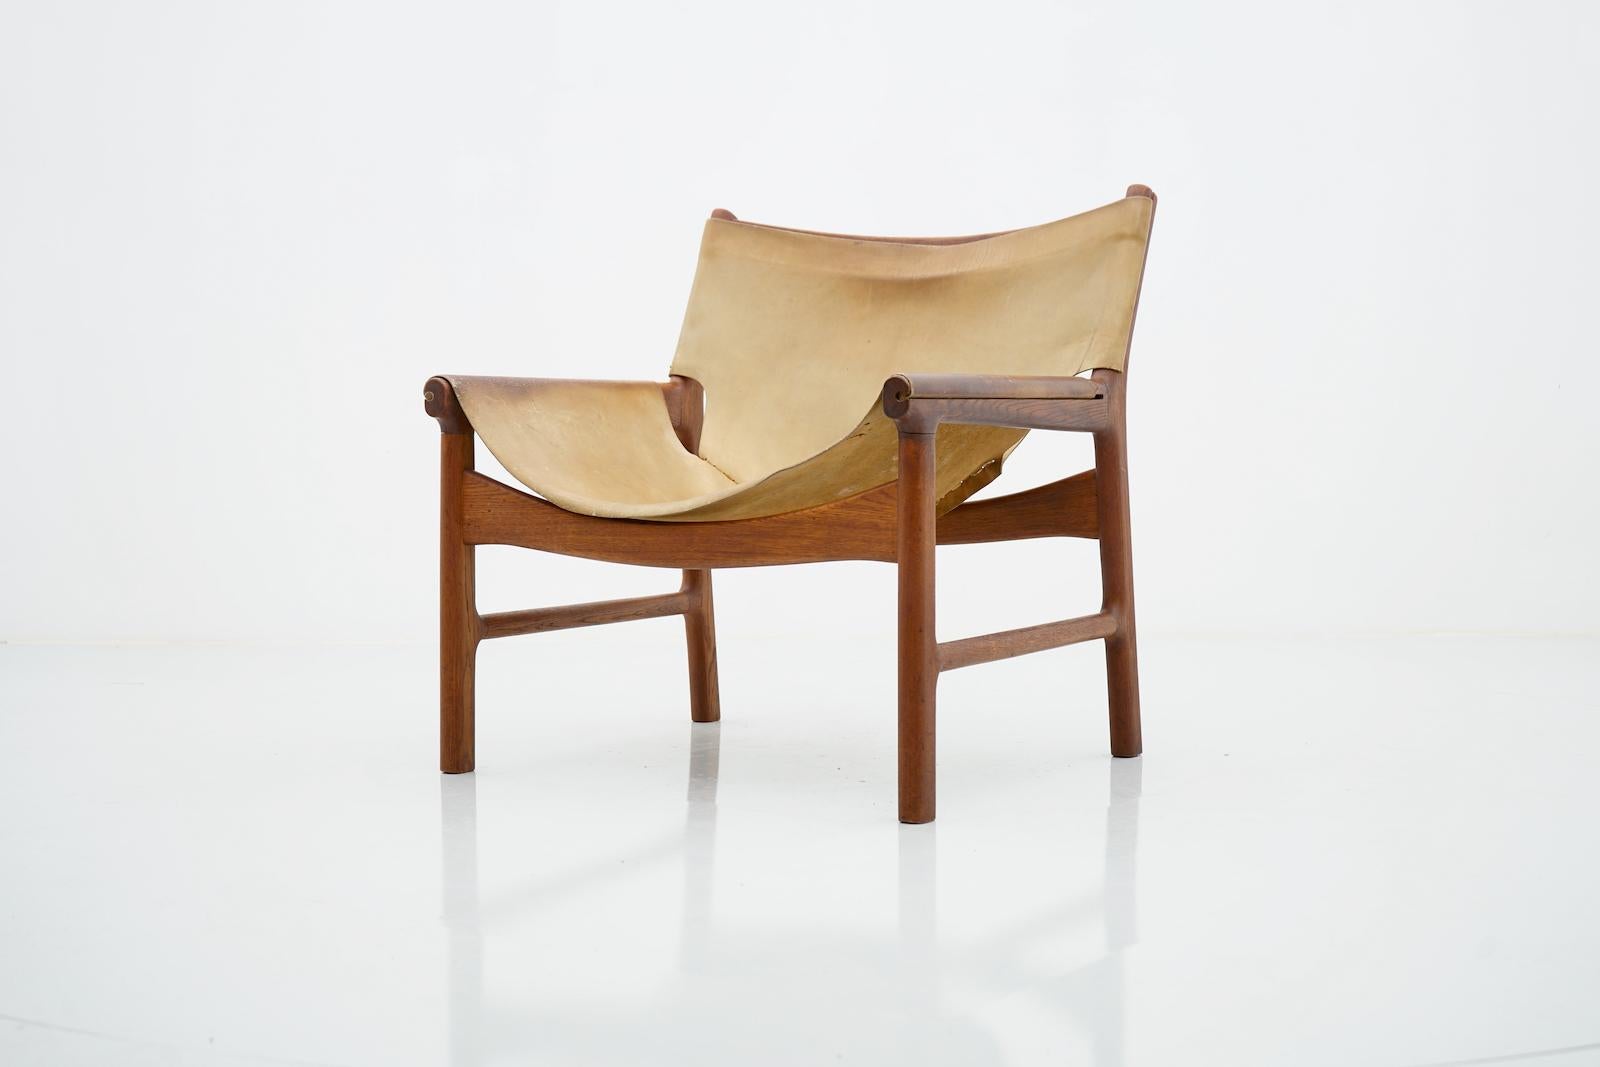 Einer der drei seltenen Easy Chairs von Illum Wikkelsoe für Michael Laursen, Dänemark, 1959.
Die Stühle sind aus Teakholz und hellbraunem Leder gefertigt
Der Zustand ist gut mit Gebrauchsspuren und schöner Patina.
Abmessungen: B 70 cm, H 73 cm, T 65